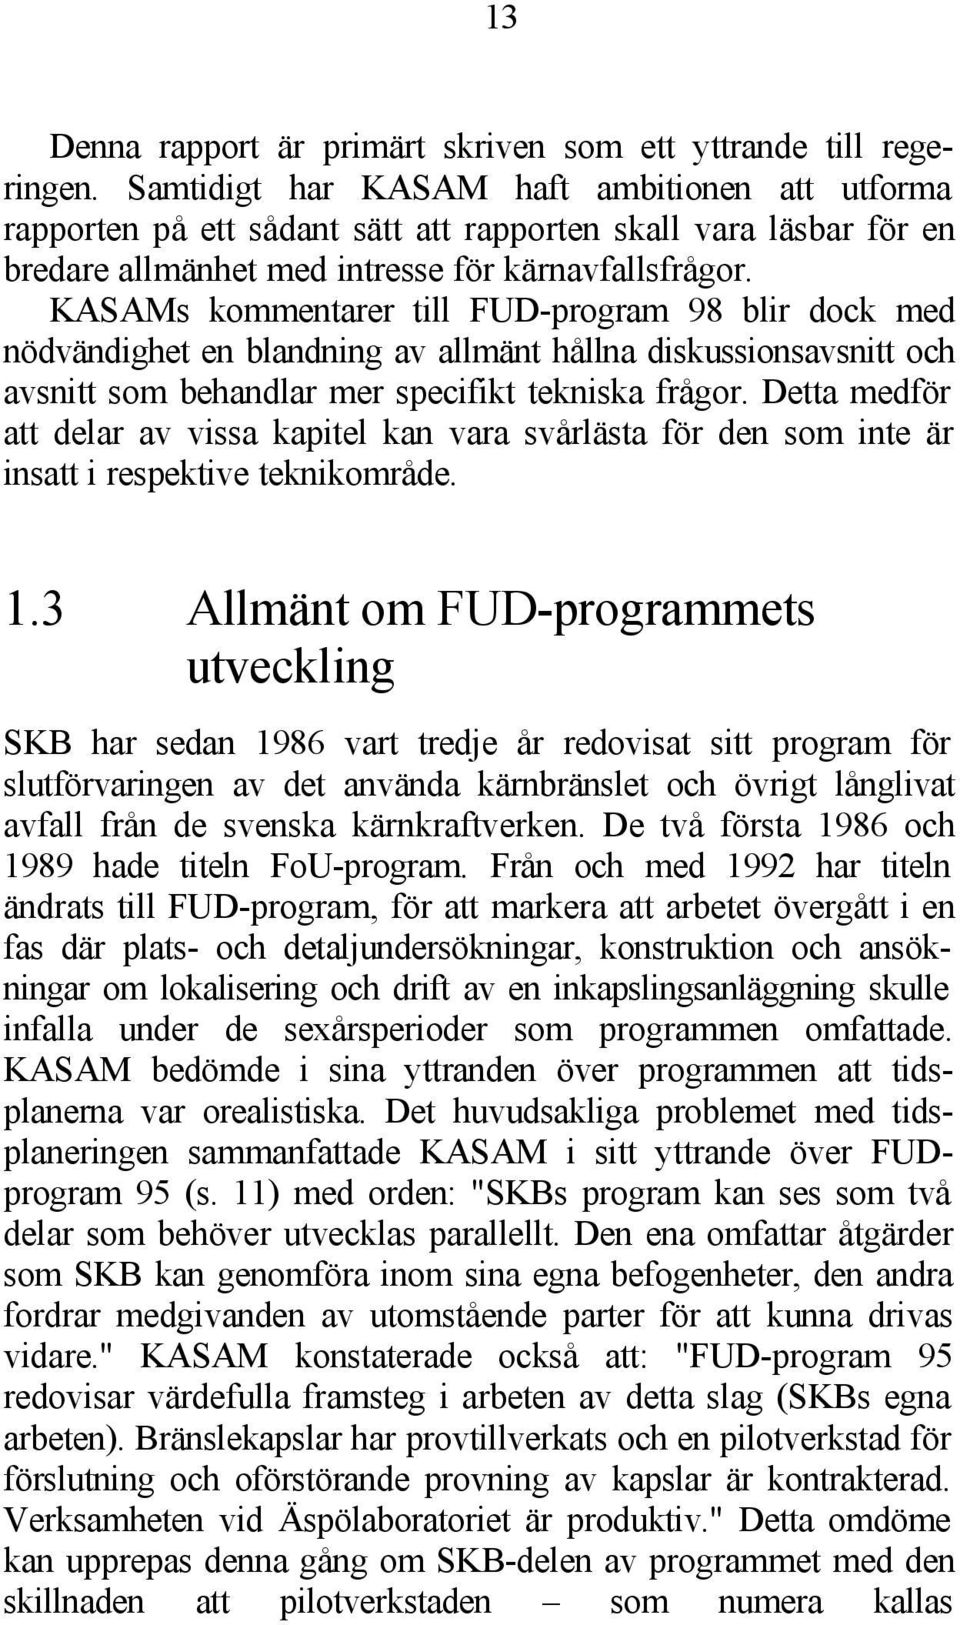 KASAMs kommentarer till FUD-program 98 blir dock med nödvändighet en blandning av allmänt hållna diskussionsavsnitt och avsnitt som behandlar mer specifikt tekniska frågor.